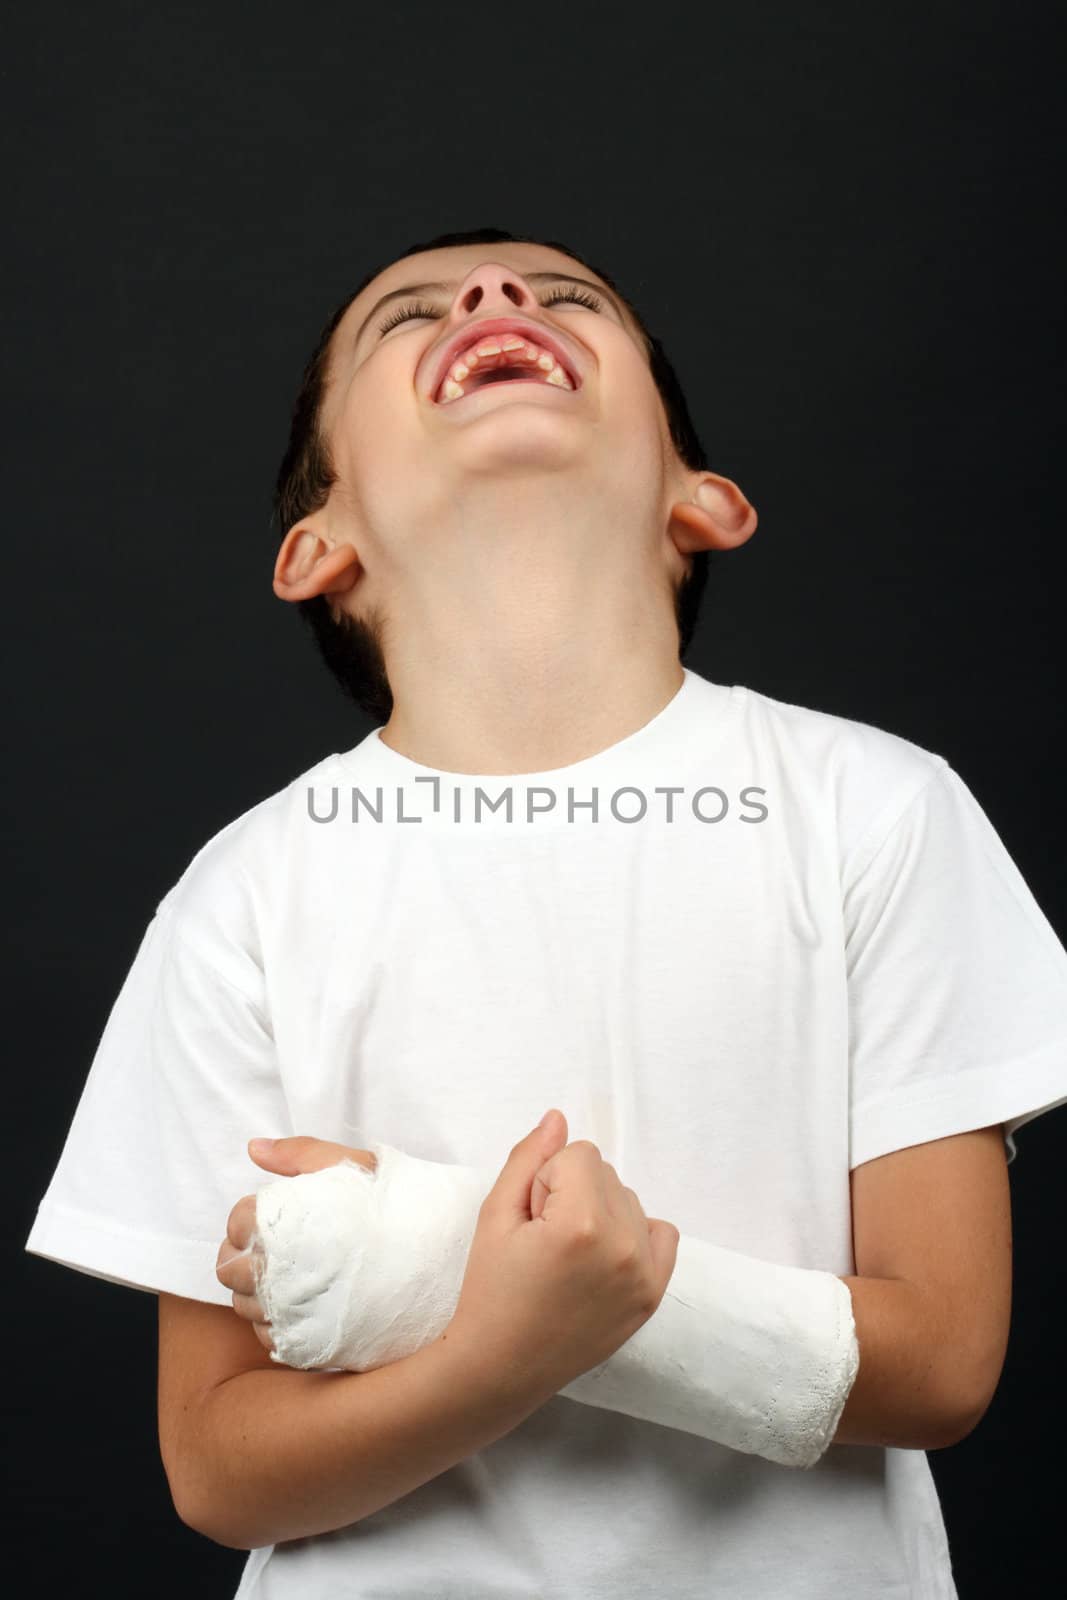 Boy with broken hand in cast, over black